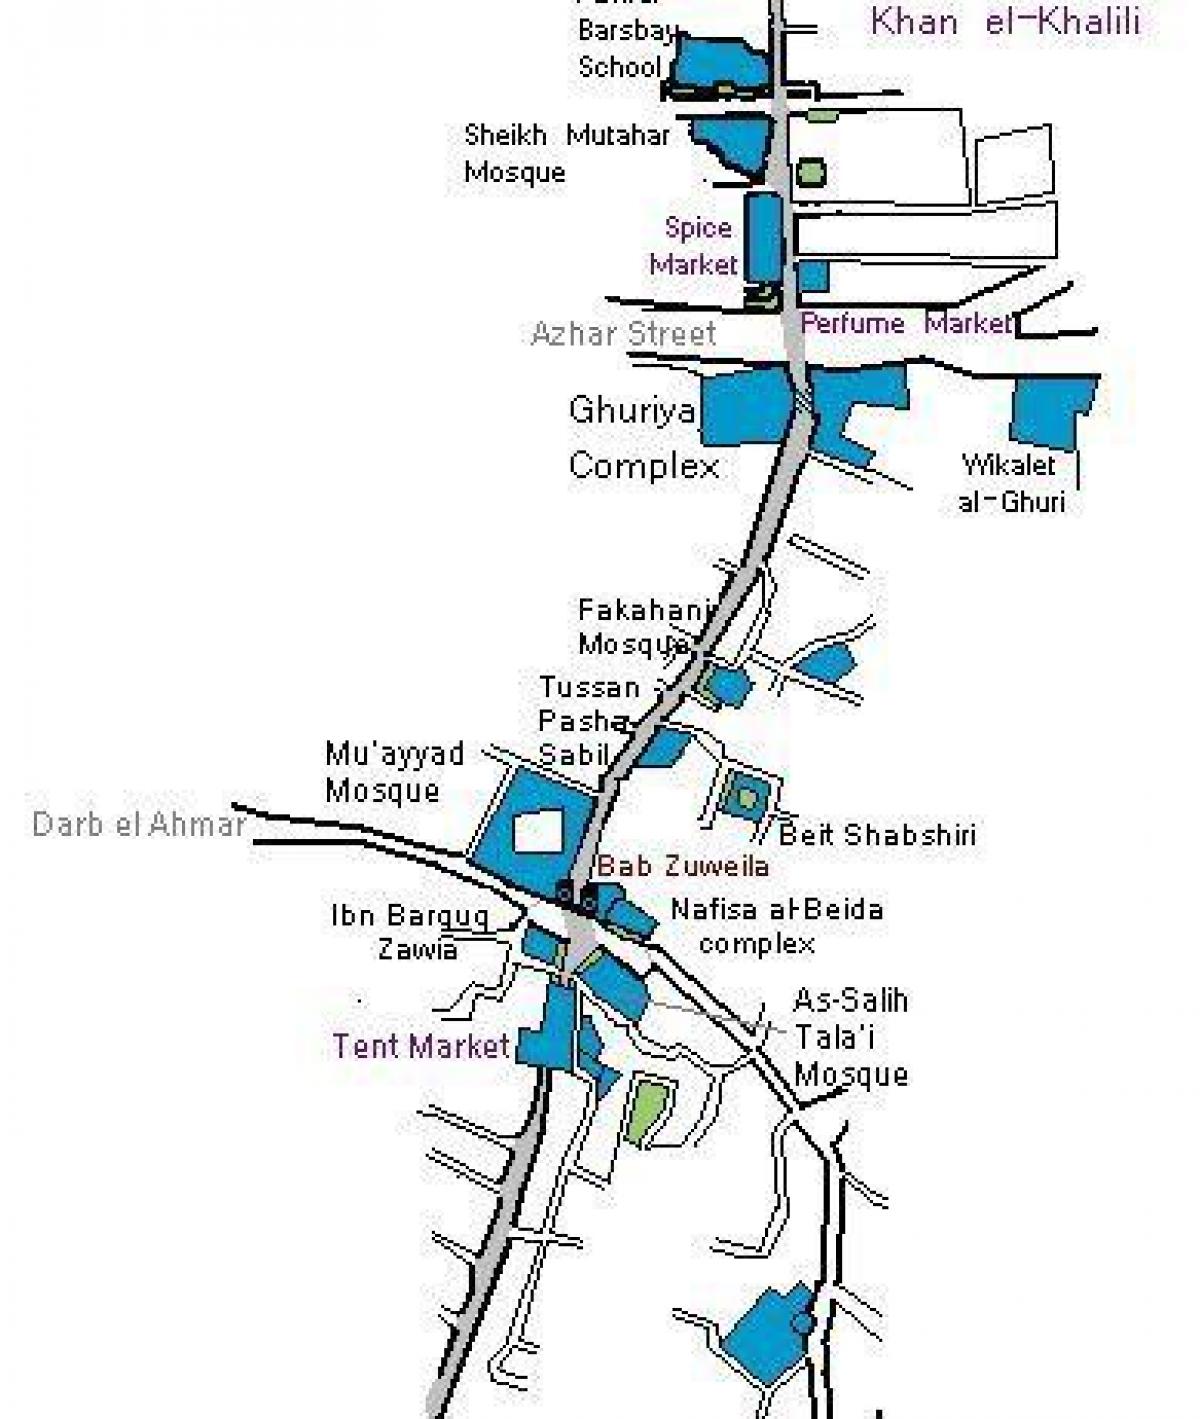 khan el khalili palengke mapa